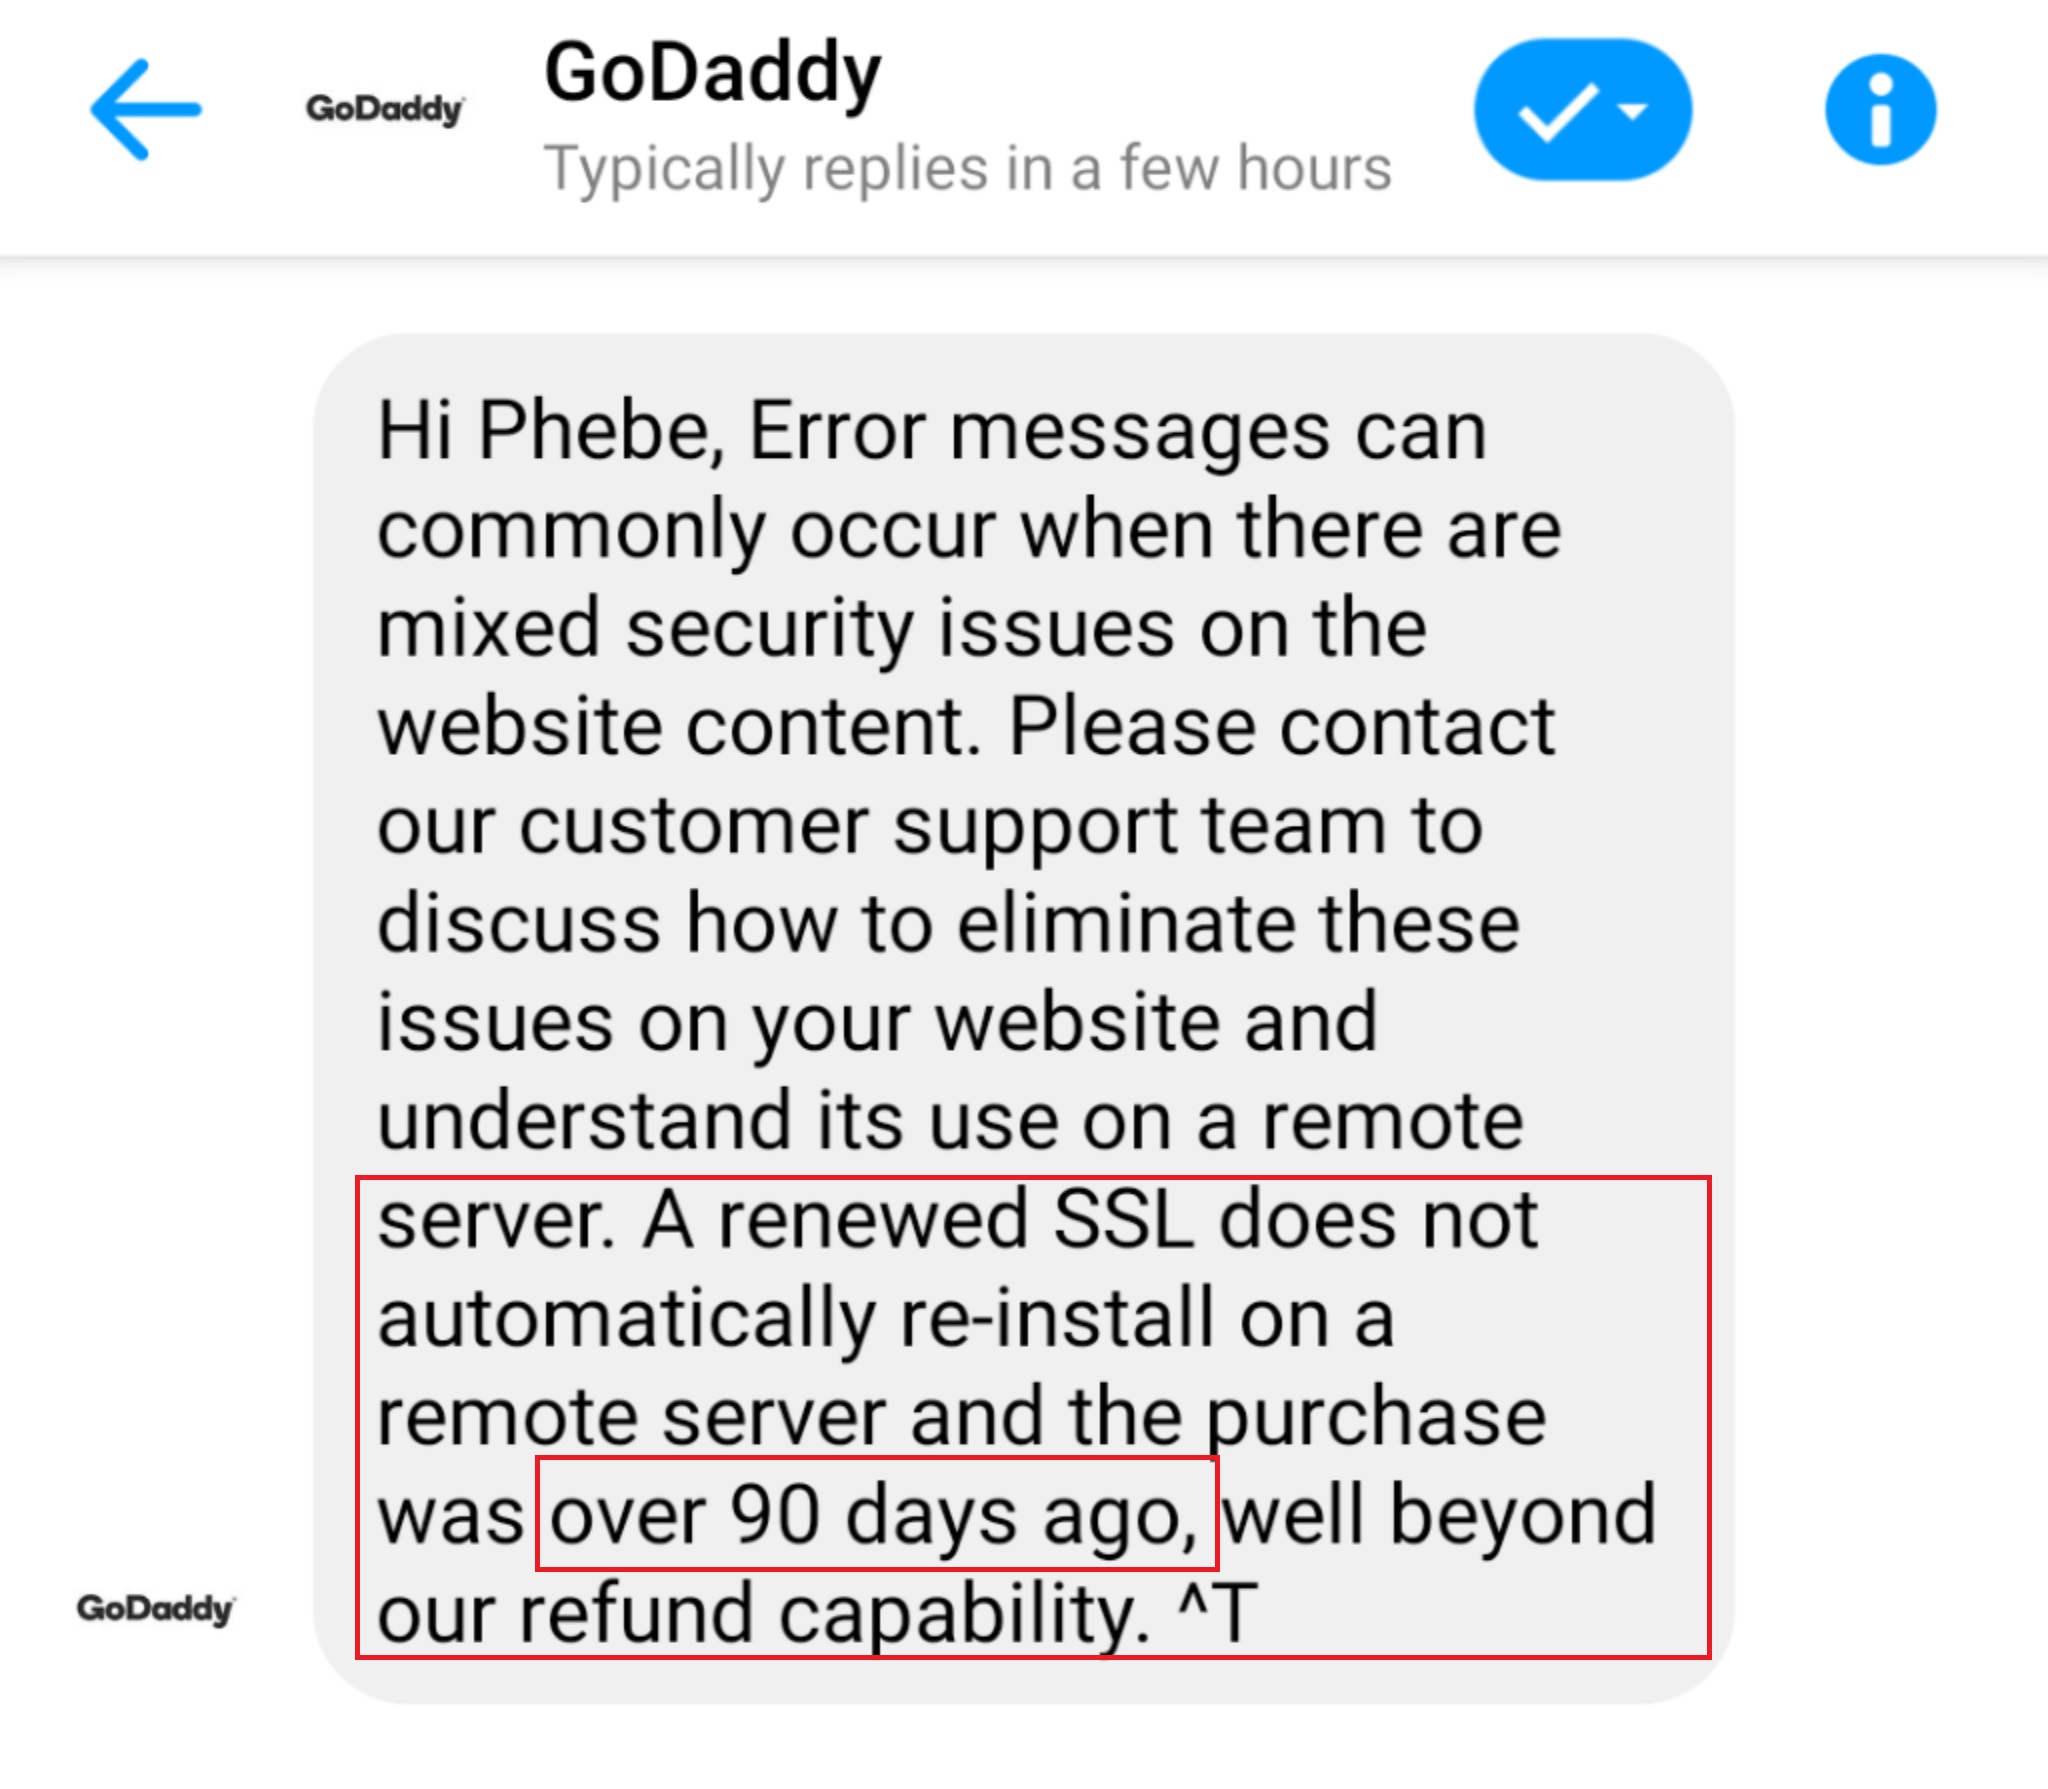 GoDaddy refund policy 90 days